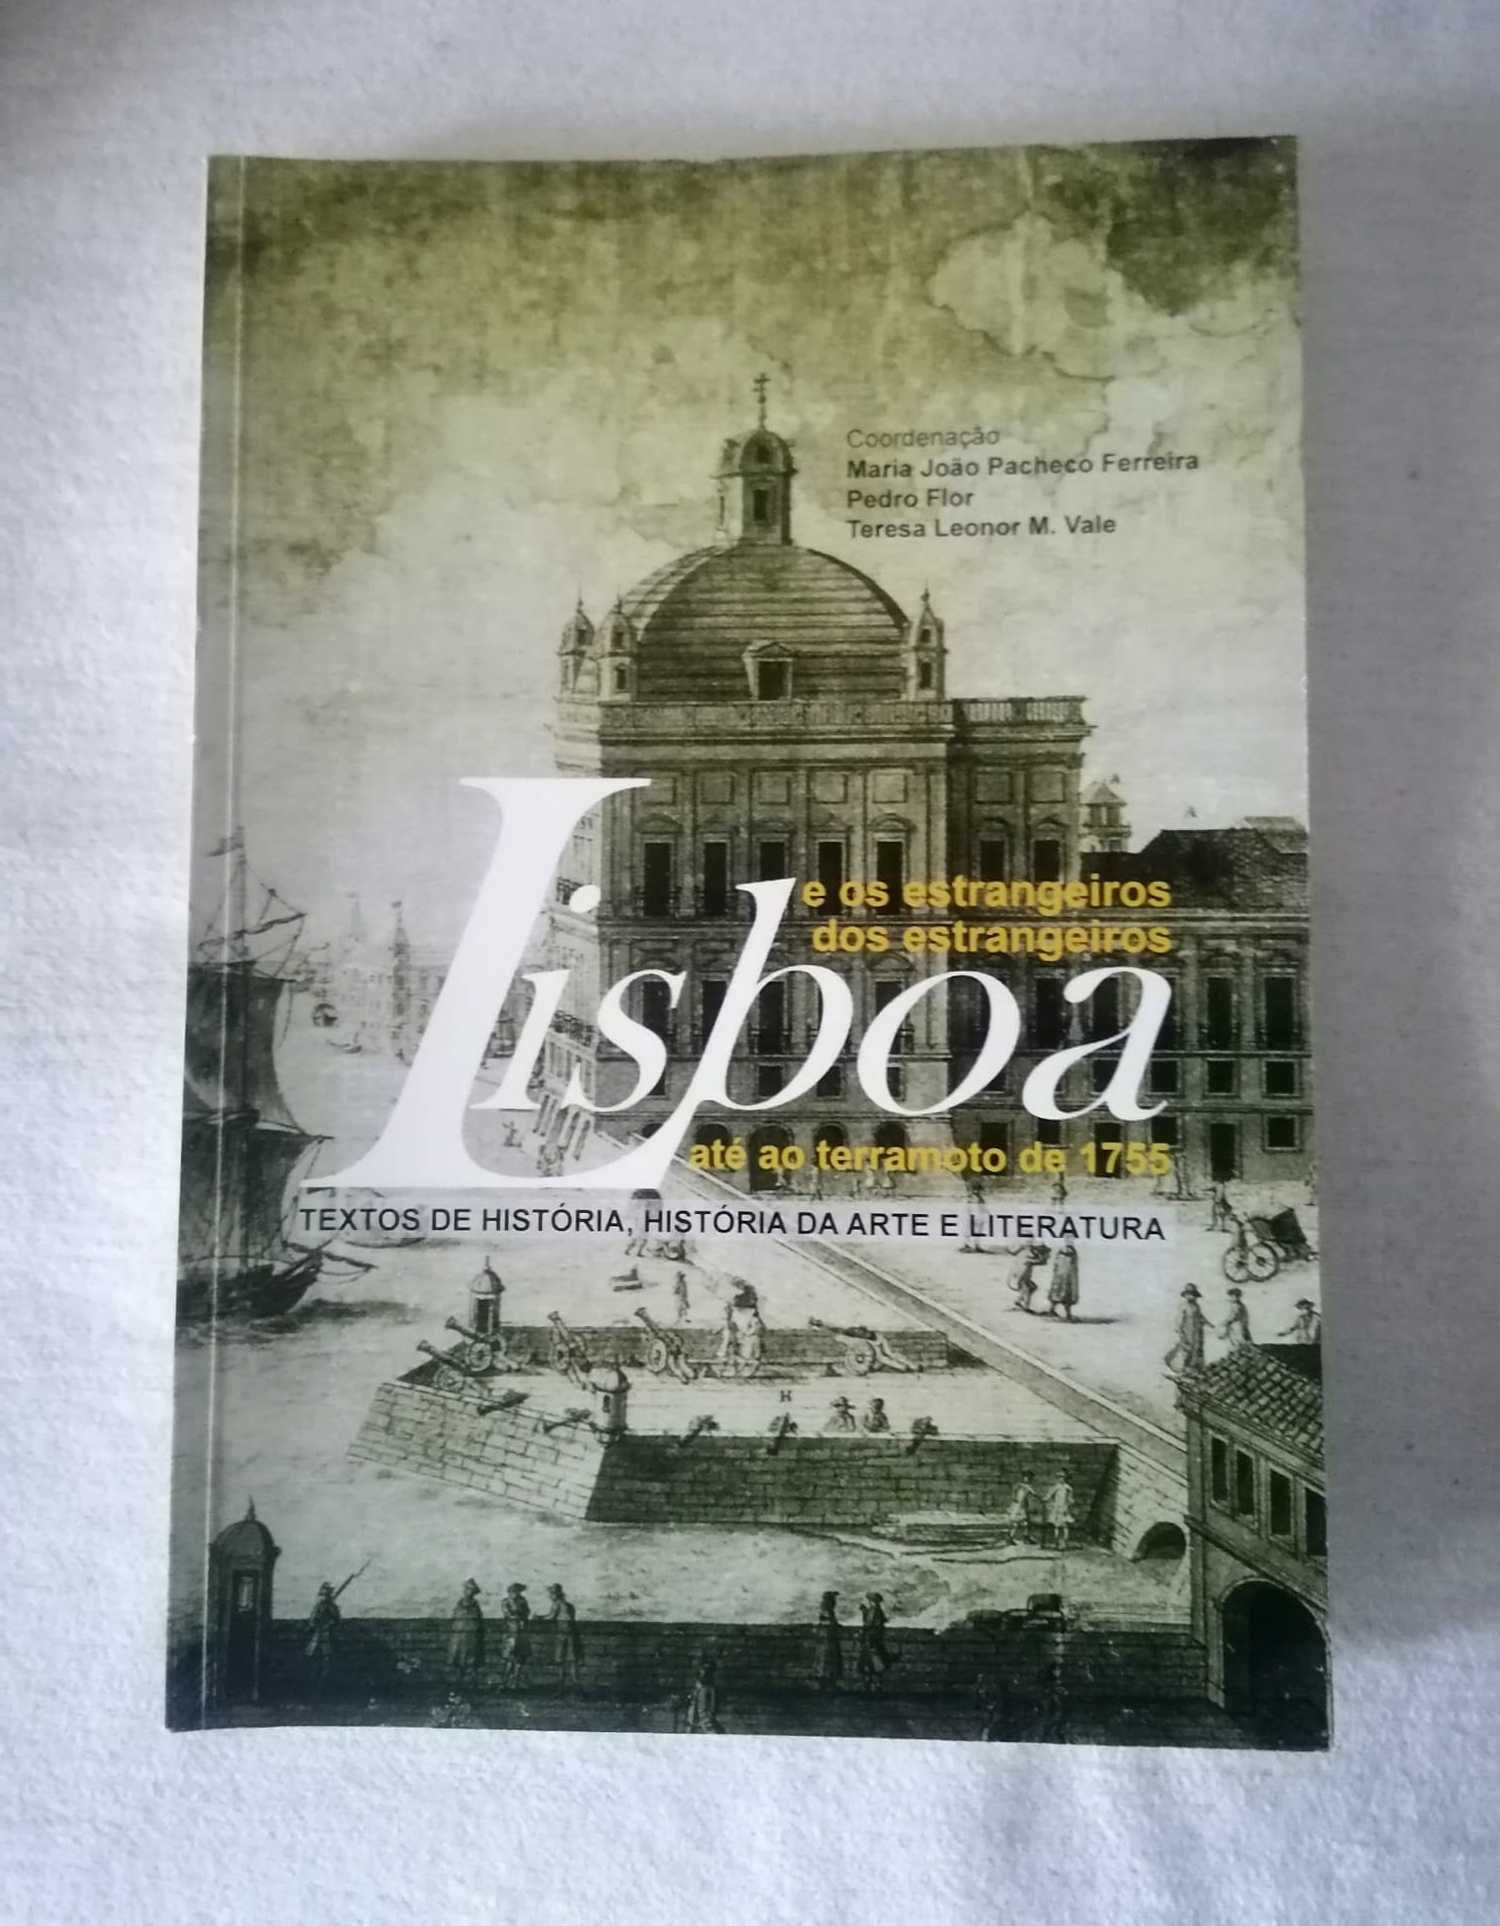 Lisboa e os estrangeiros, dos estrangeiros até ao Terramoto de 1755